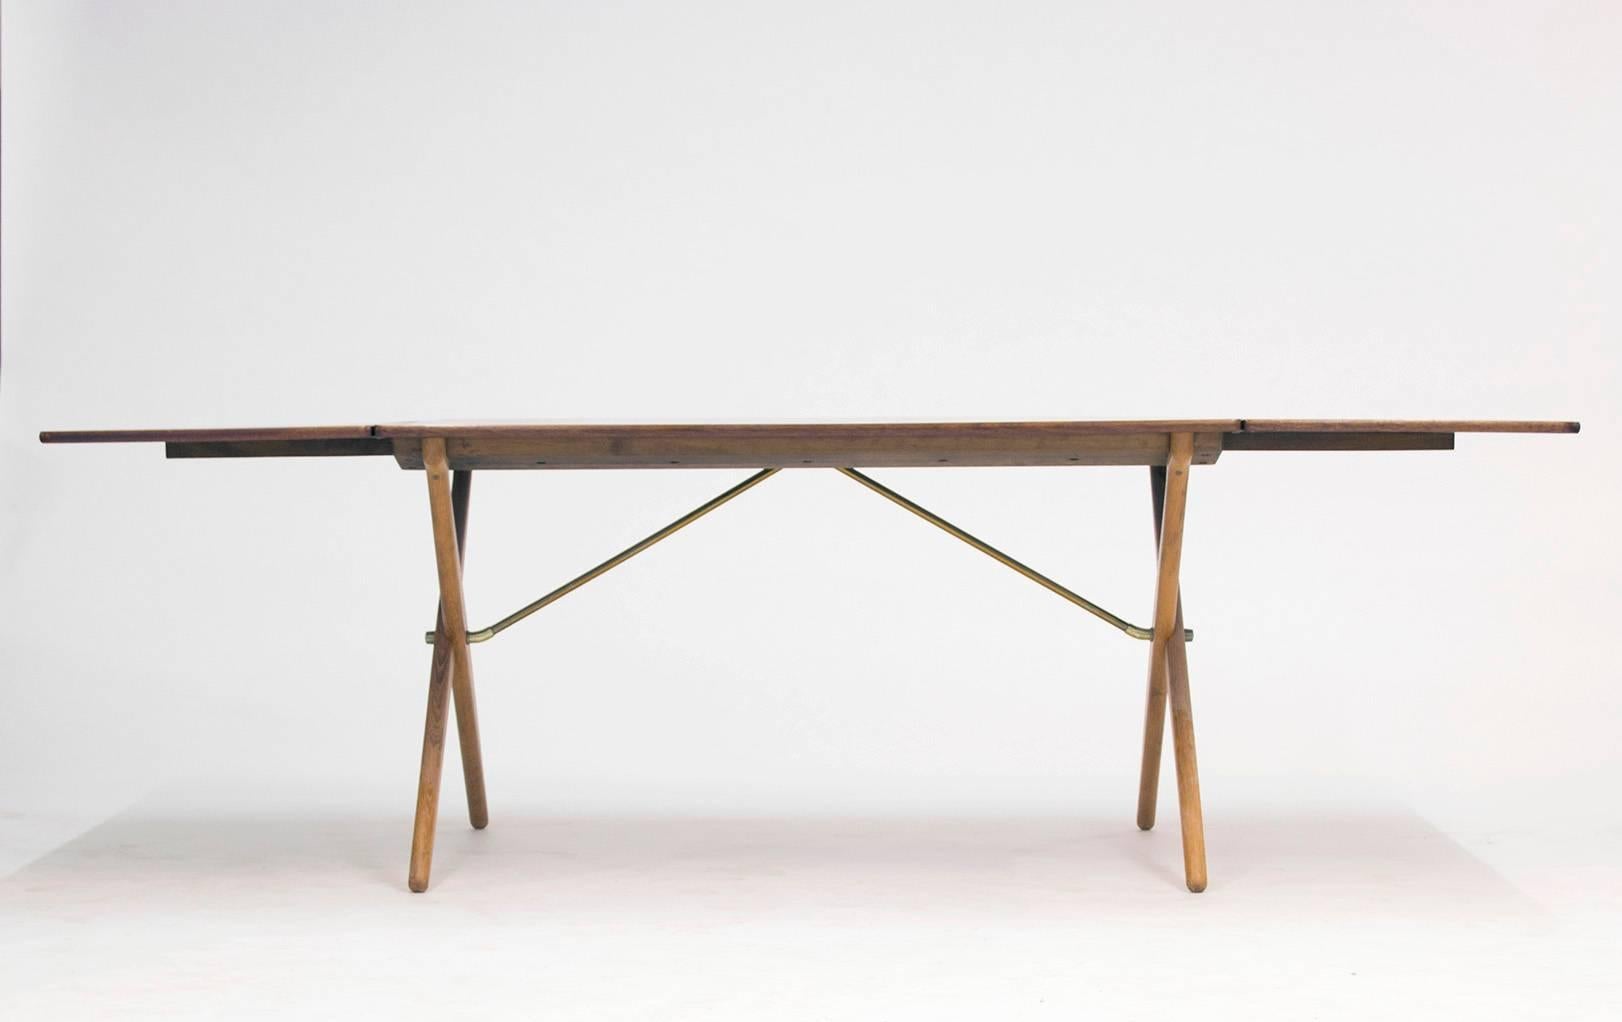 Scandinavian Modern Cross-legged Dining Table by Hans J. Wegner